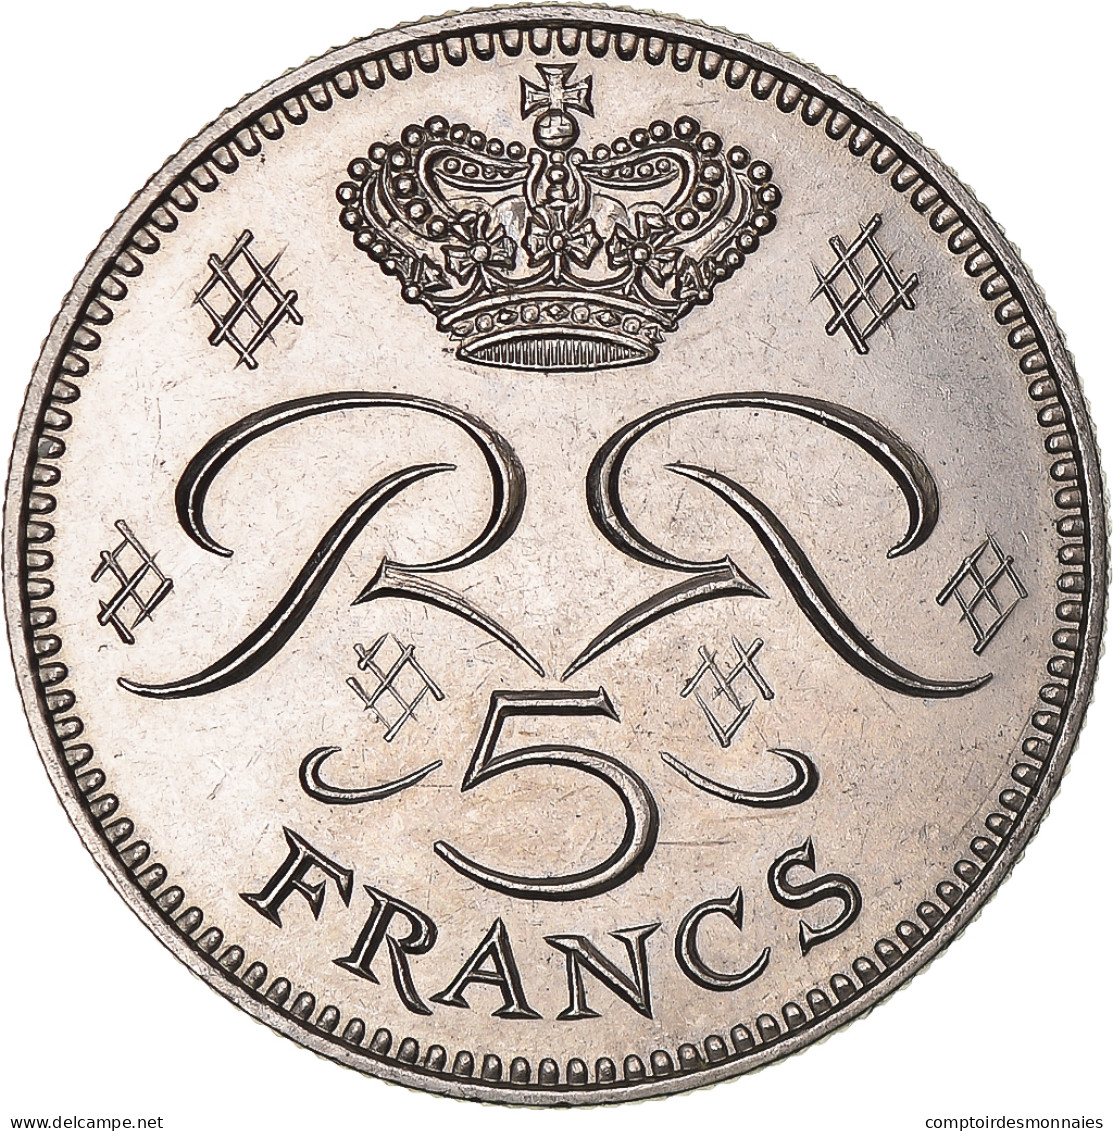 Monnaie, Monaco, Rainier III, 5 Francs, 1971, SPL, Cupro-nickel, Gadoury:MC 153 - 1960-2001 Nouveaux Francs